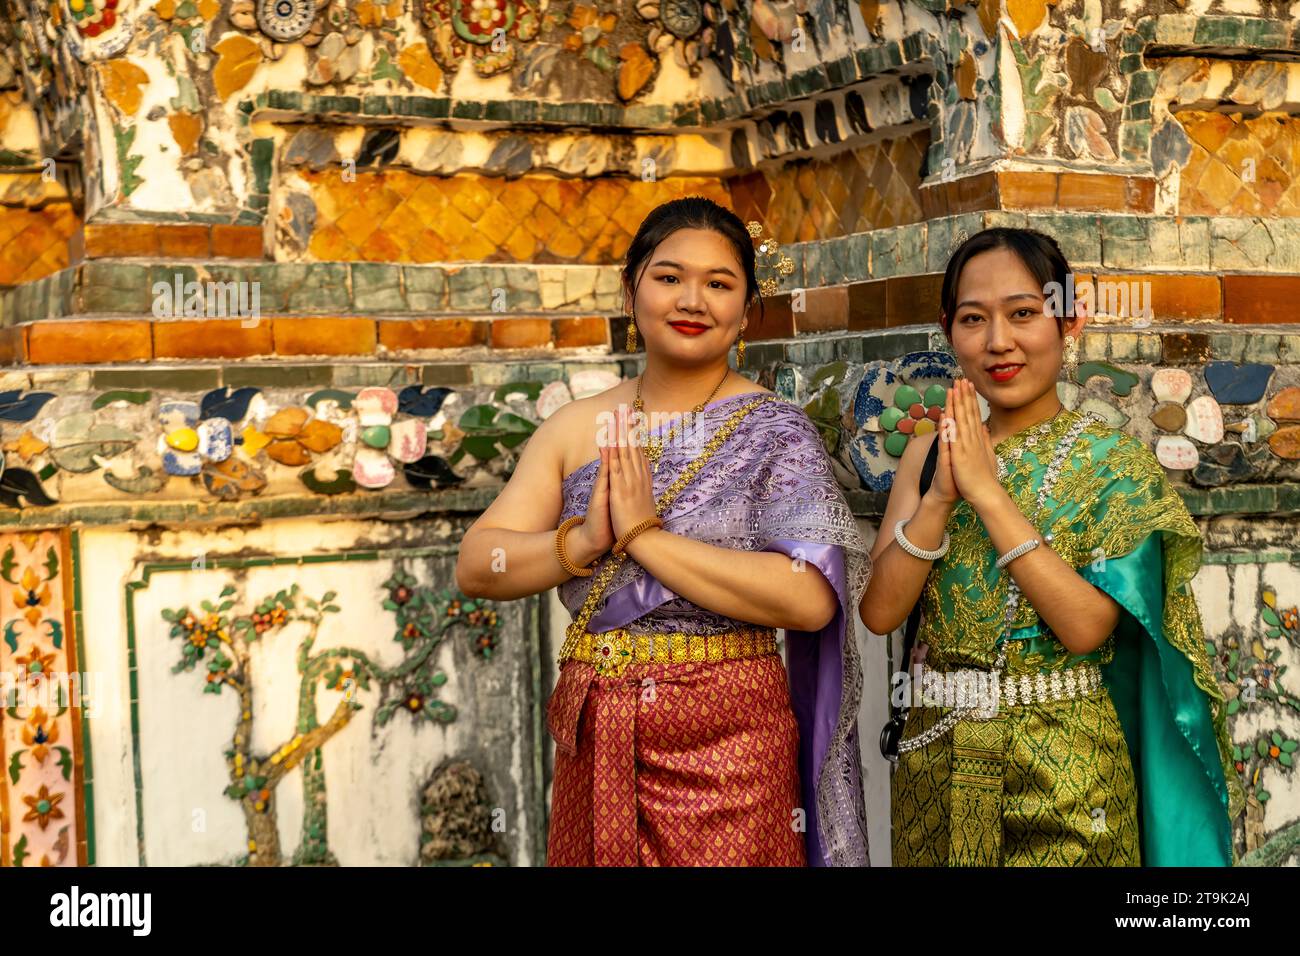 Festlich traditionell gekleidete Frauen posieren vor dem Tempel Wat Arun oder Tempel der Morgenröte a Bangkok, Thailandia, Asien | Traditional dres Foto Stock